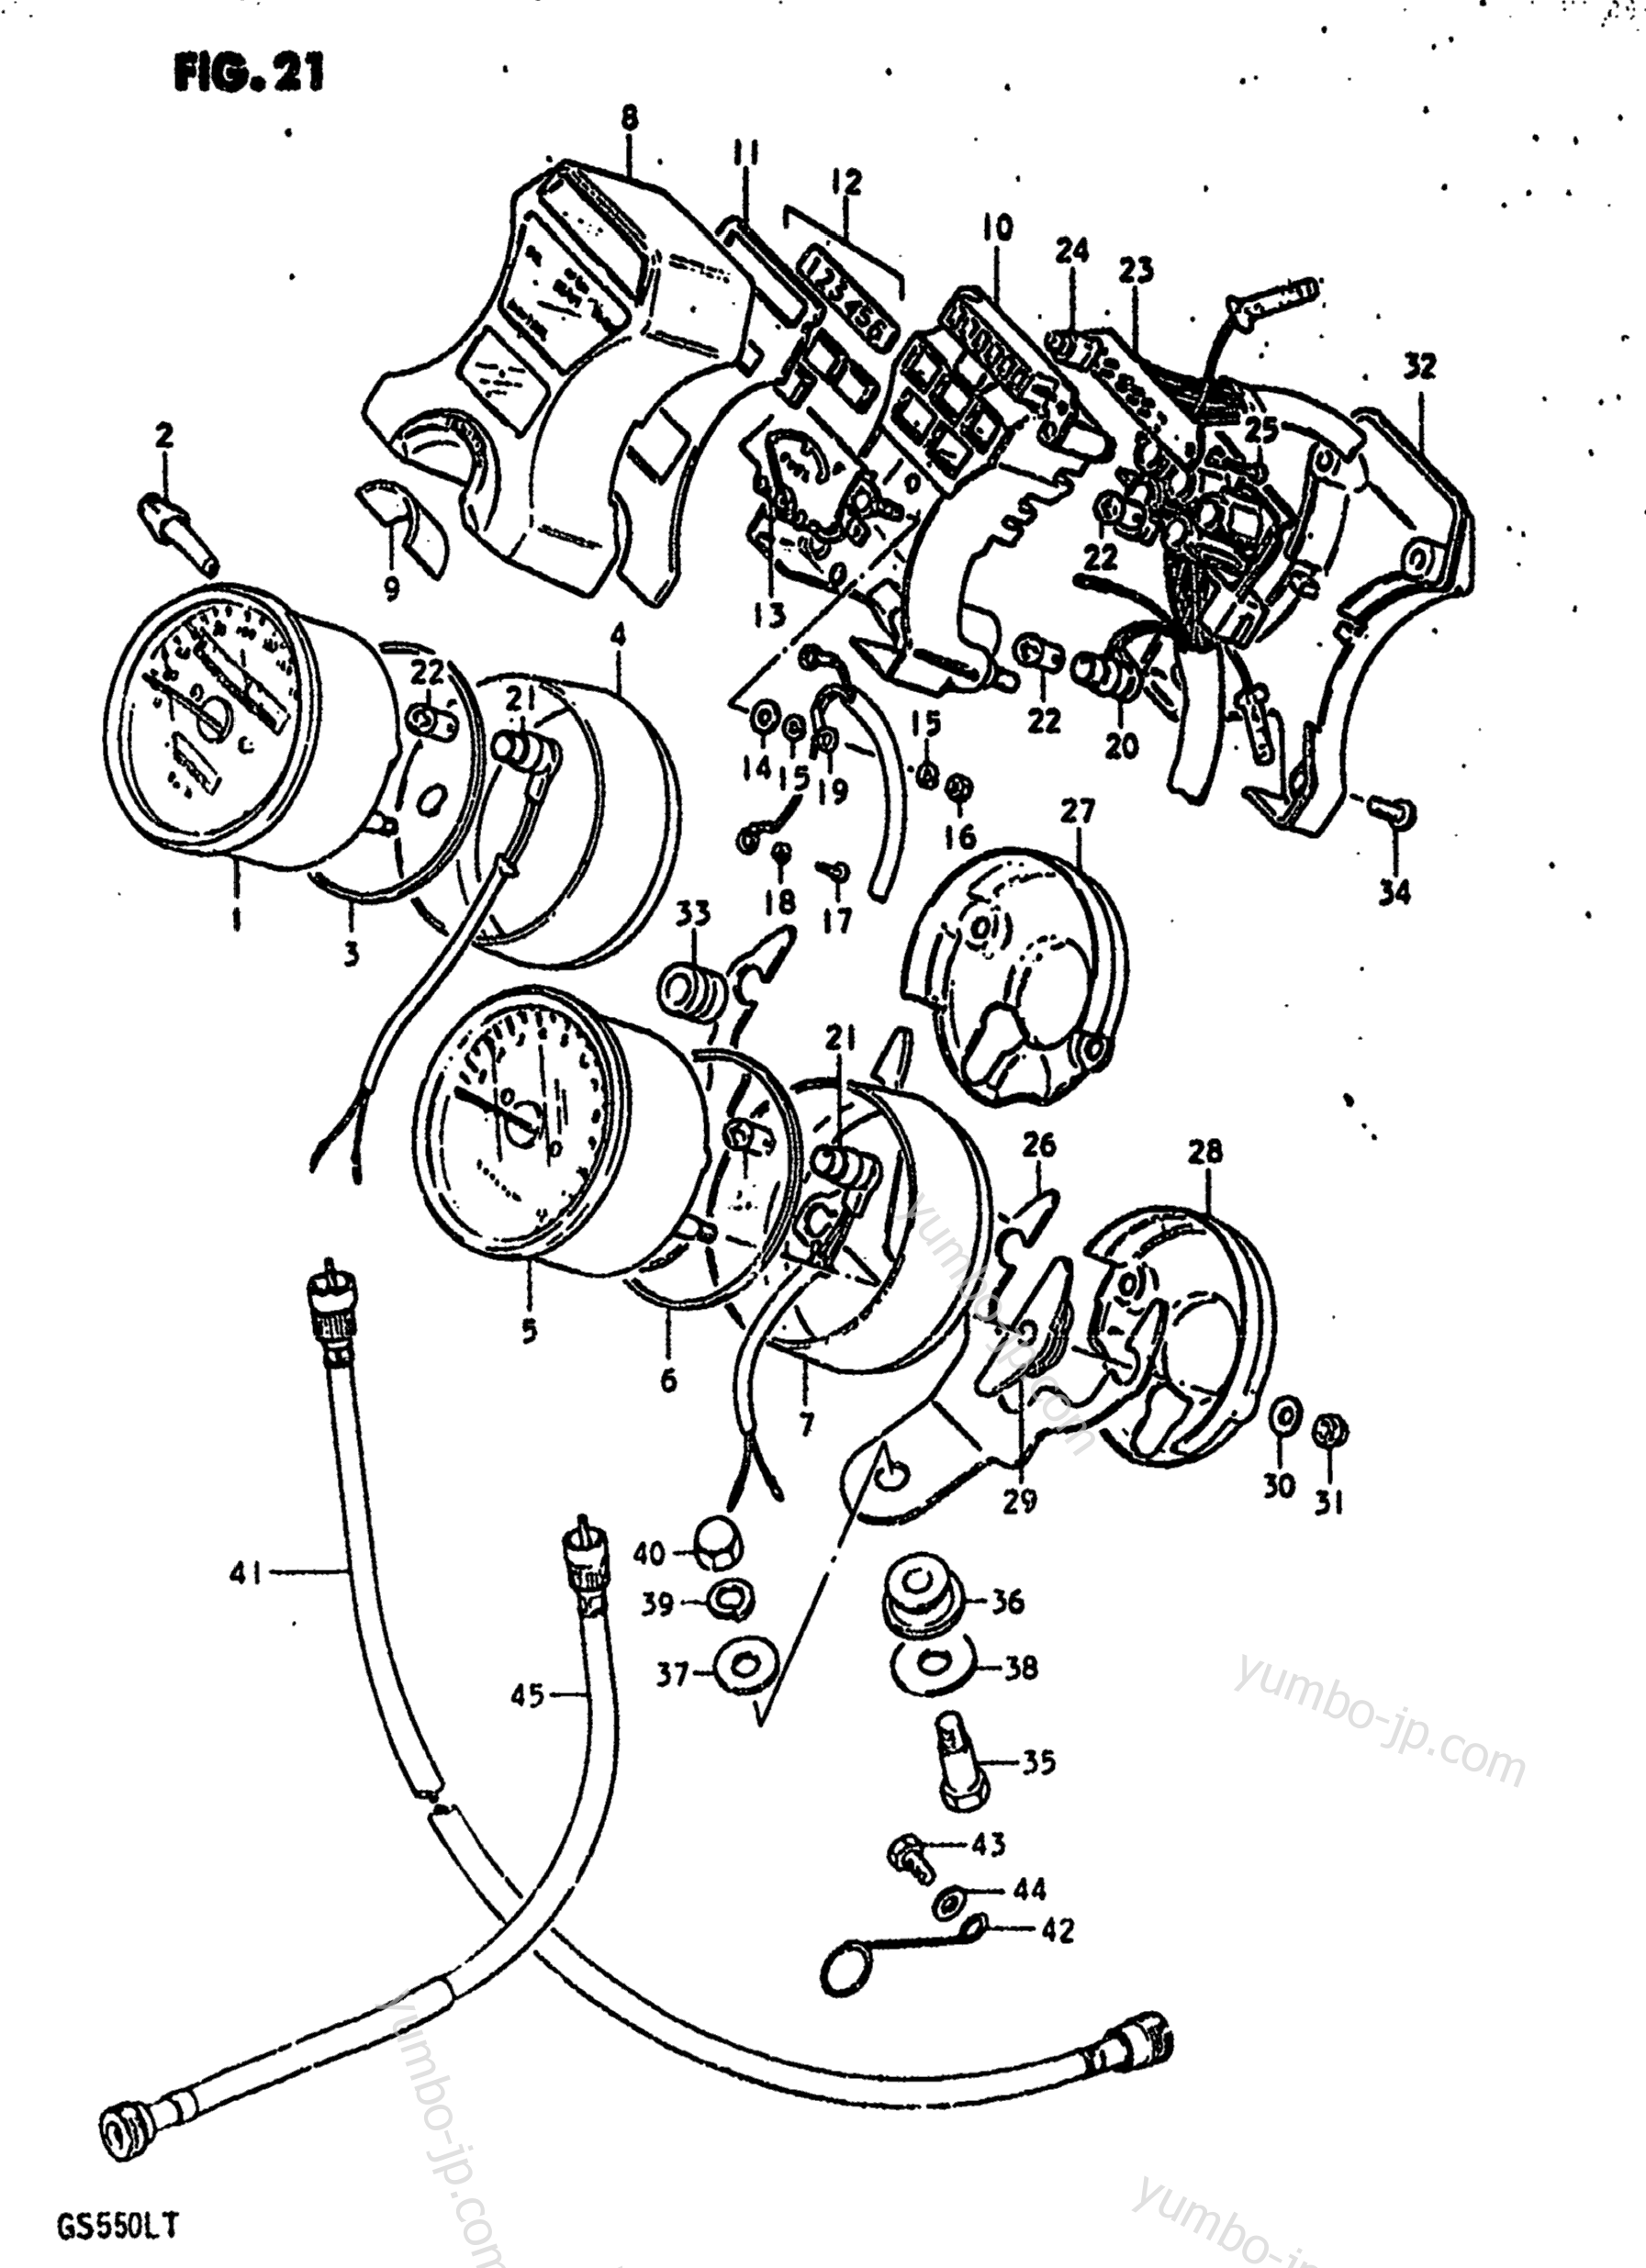 Speedometer - Tachometer for motorcycles SUZUKI GS550L 1980 year